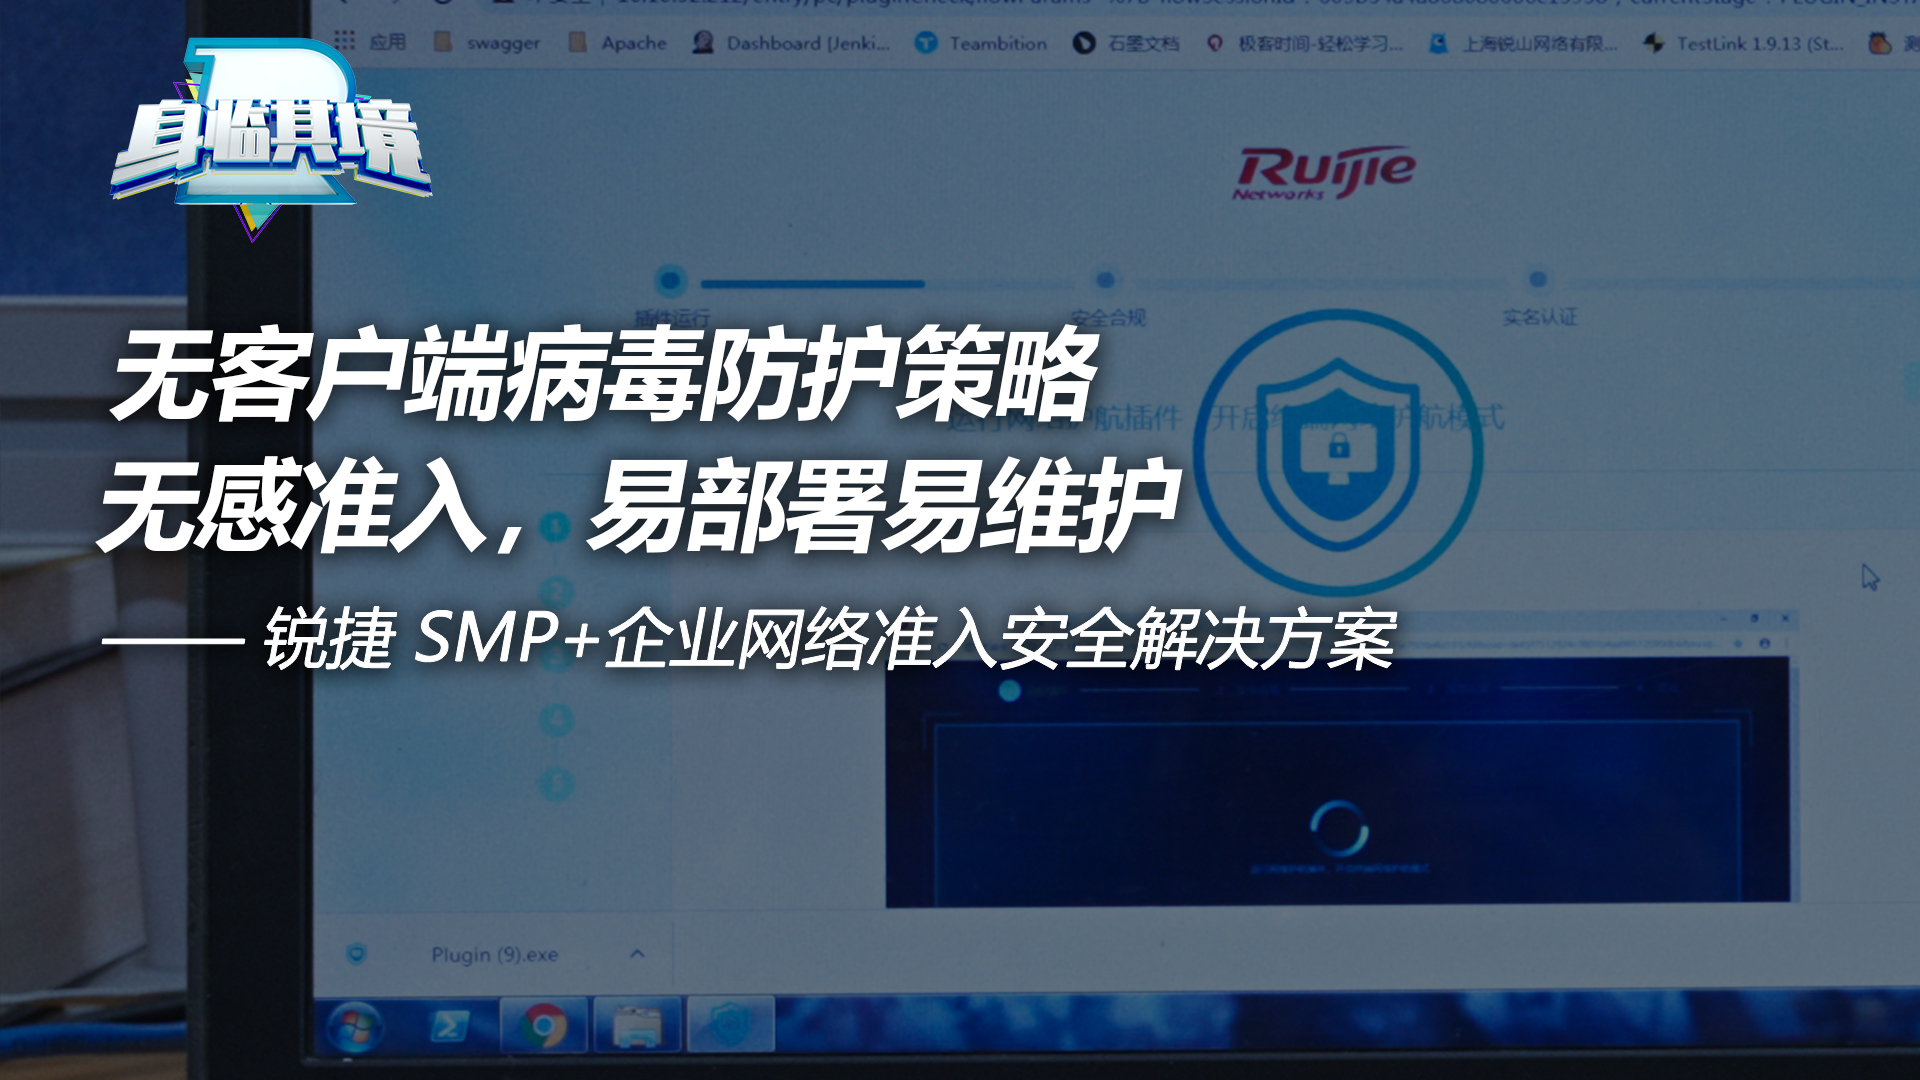 SMP+企业网络准入安全解决方案-无客户端病毒防护策略体验视频